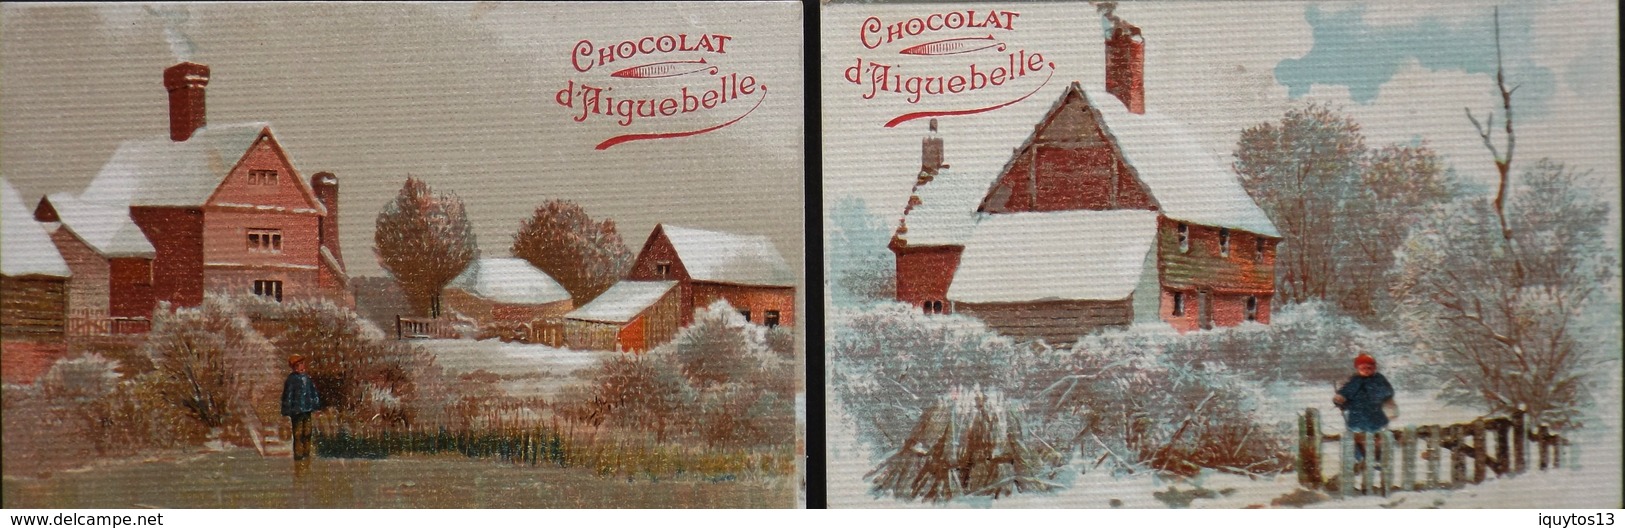 2 Chromos & Images > Chocolat > Aiguebelle - Paysages - En T.Bon Et. - Aiguebelle